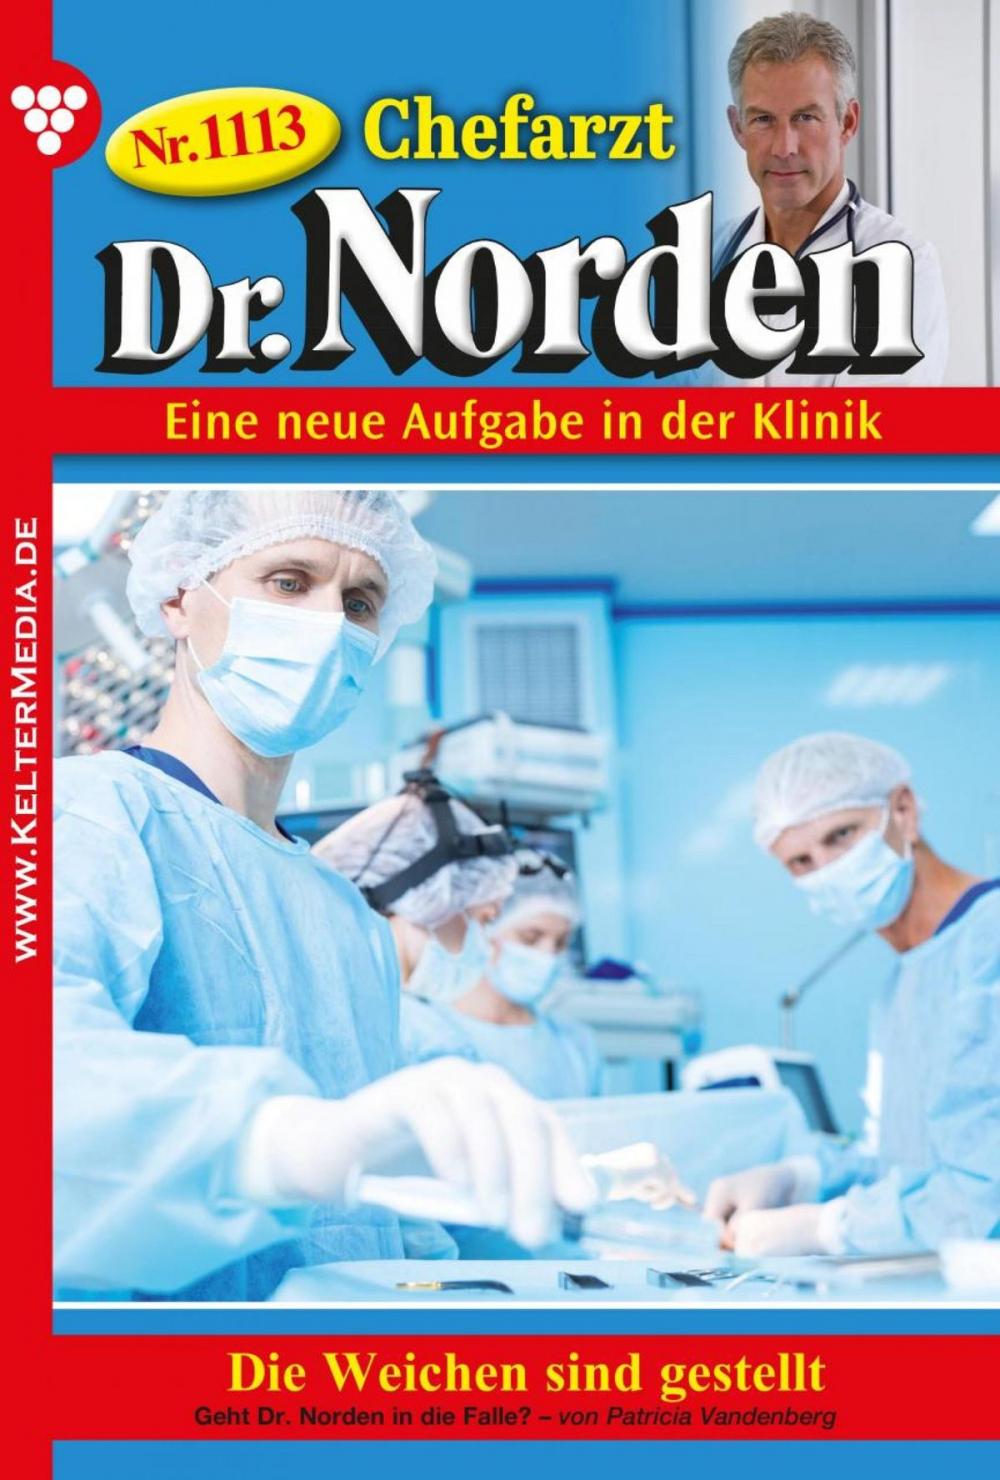 Big bigCover of Chefarzt Dr. Norden 1113 – Arztroman